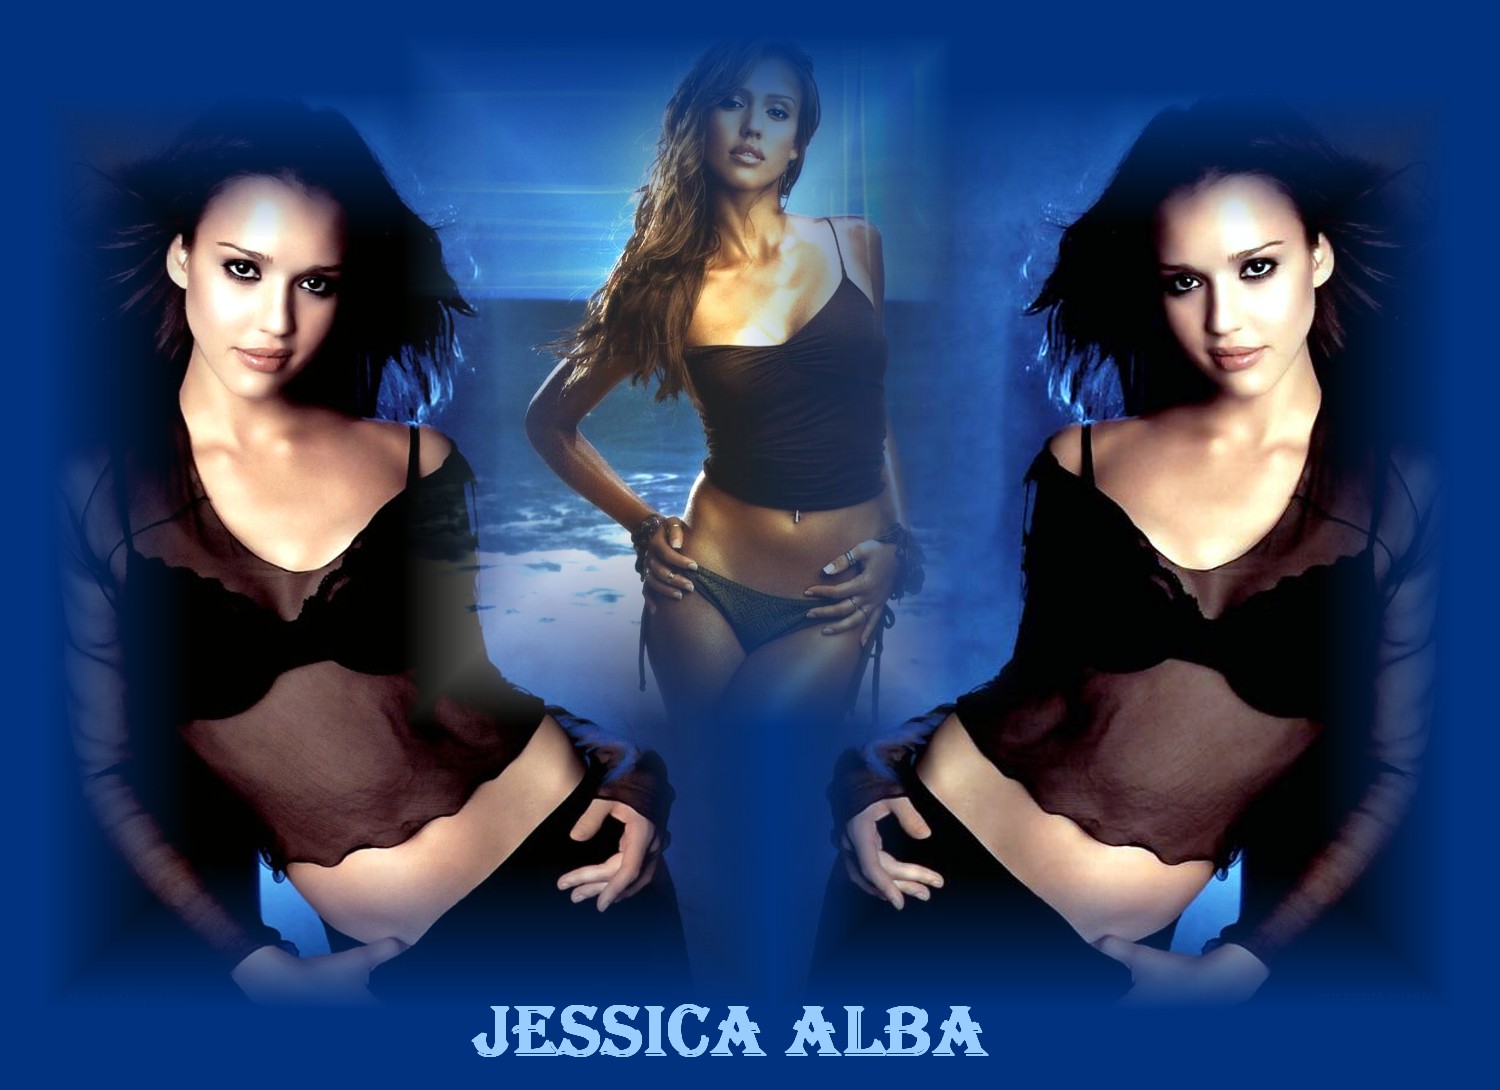 Jessica alba 153